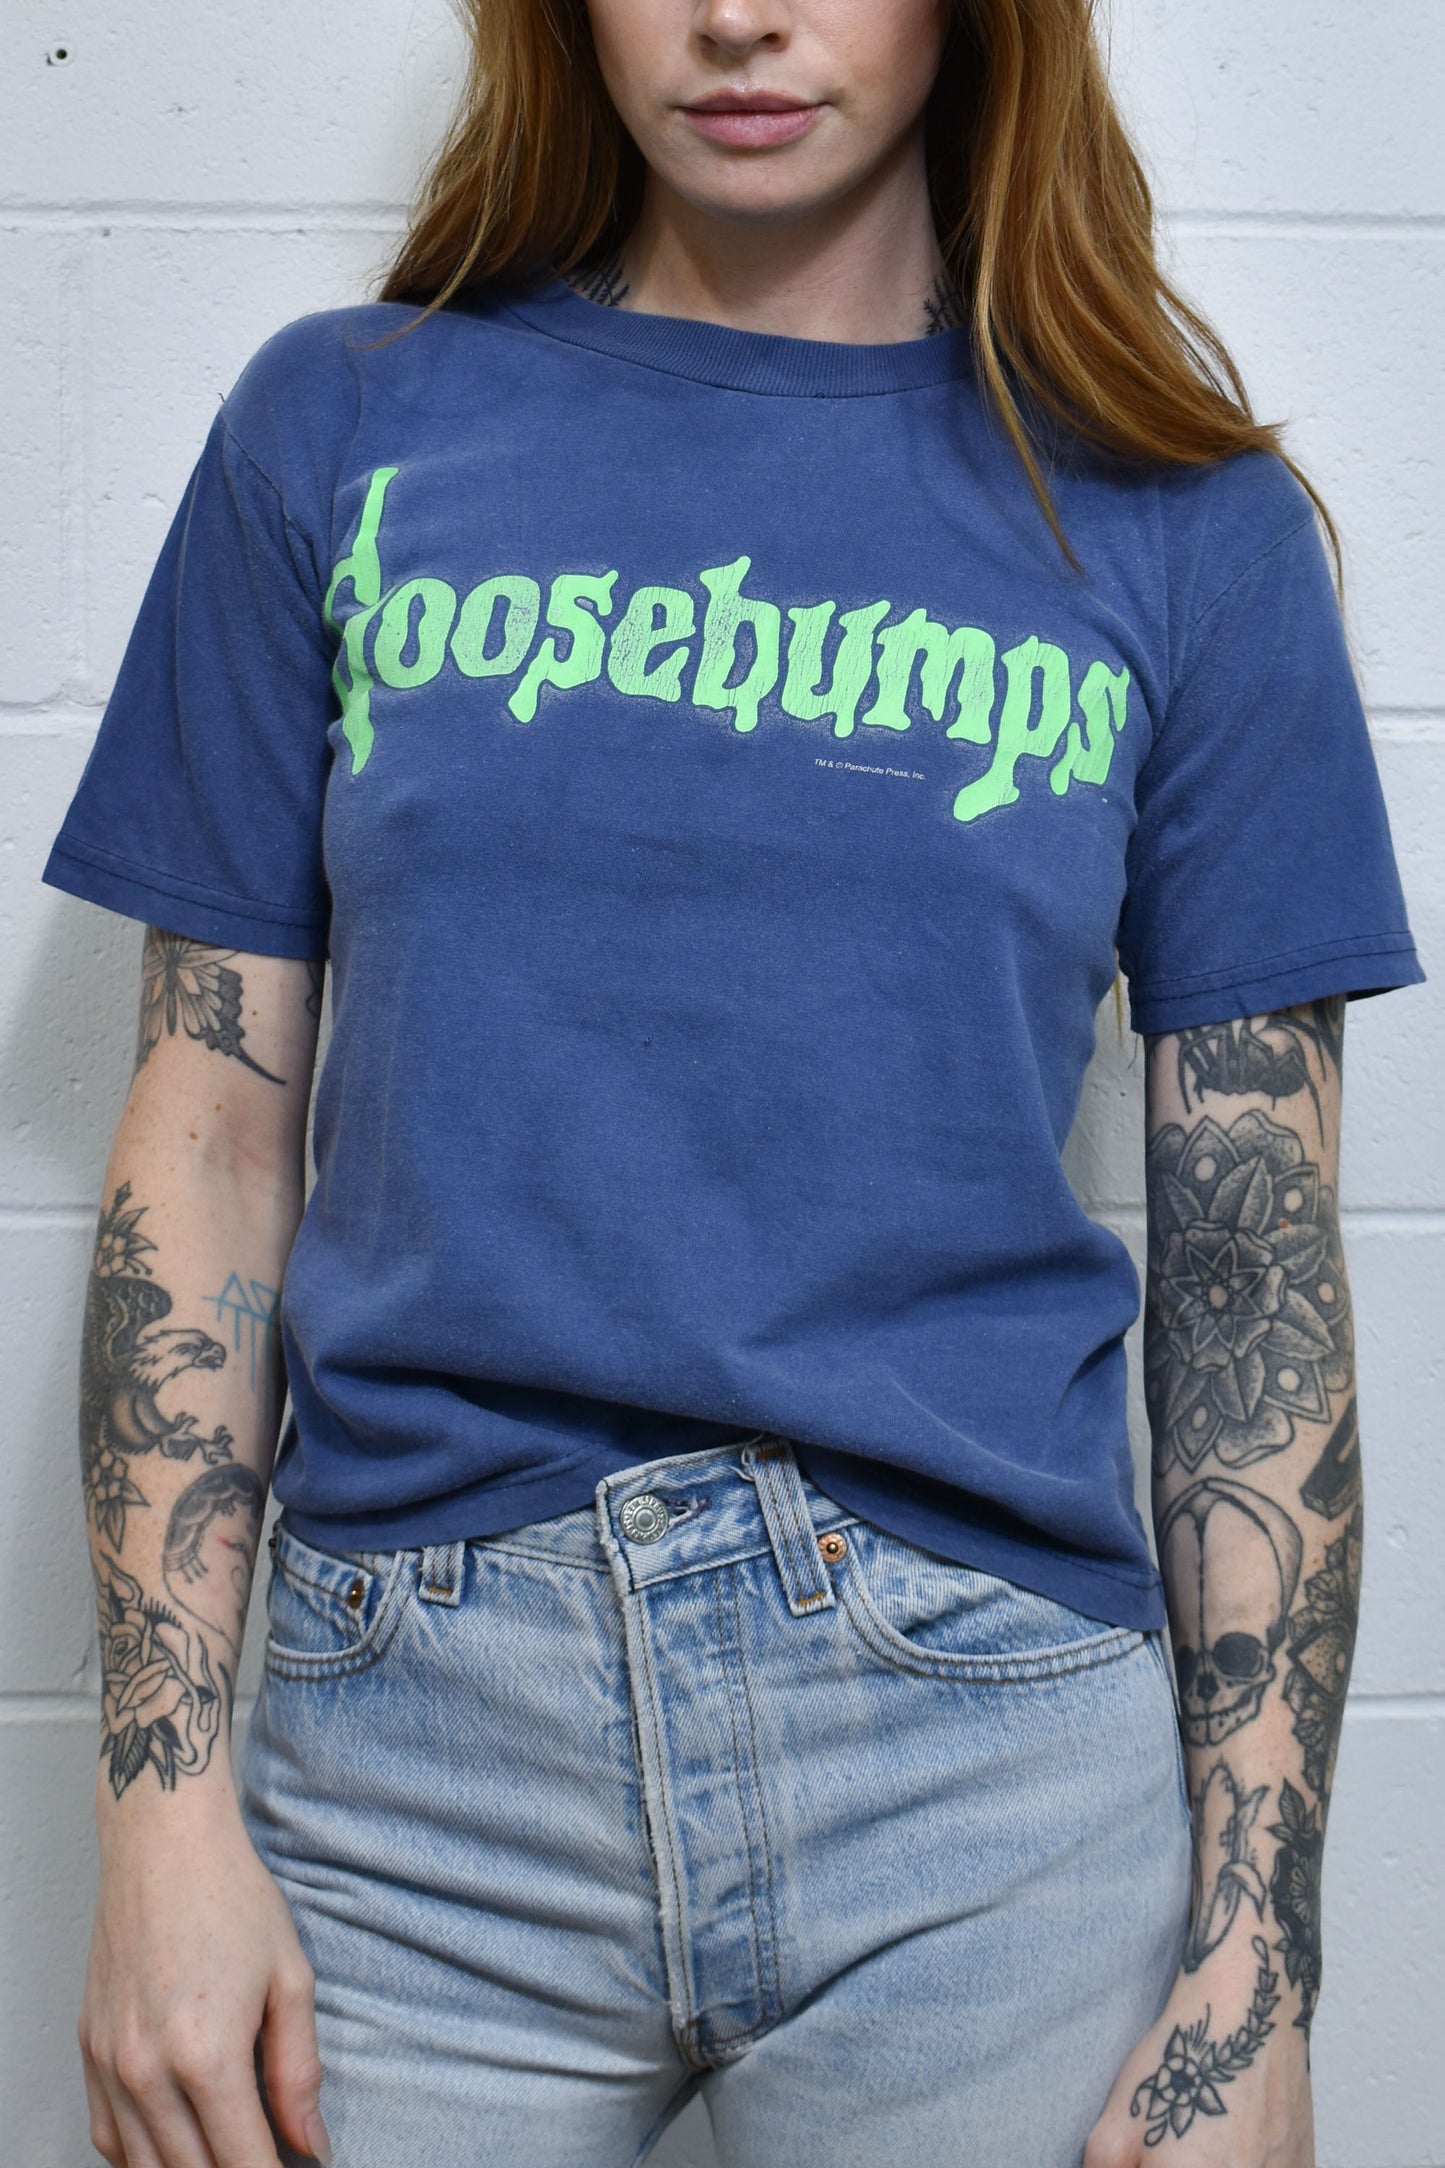 Vintage 90's "Goosebumps" T-Shirt